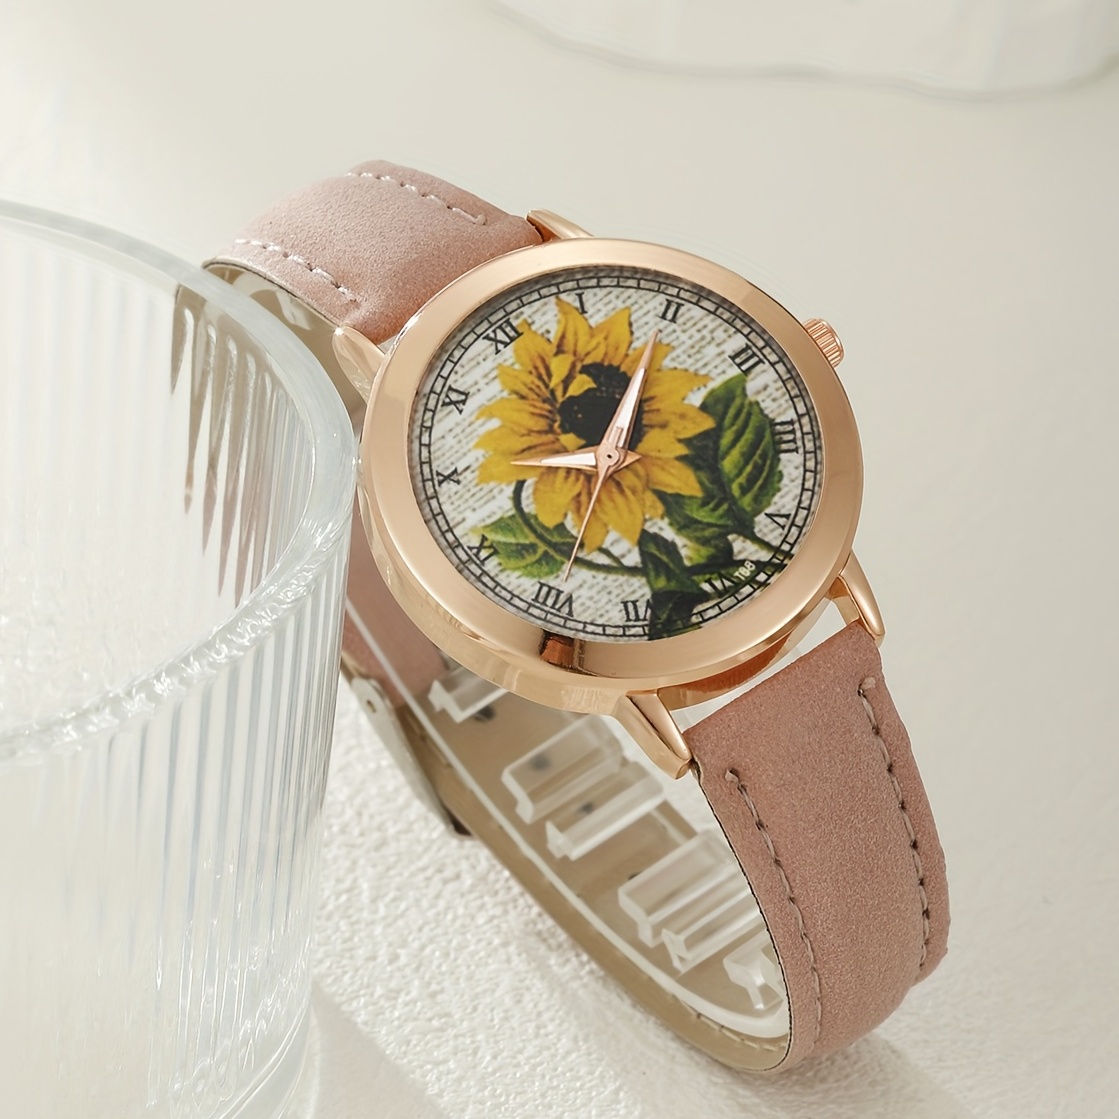 Reloj girasol, reloj flores, reloj mujer, reloj niña, reloj